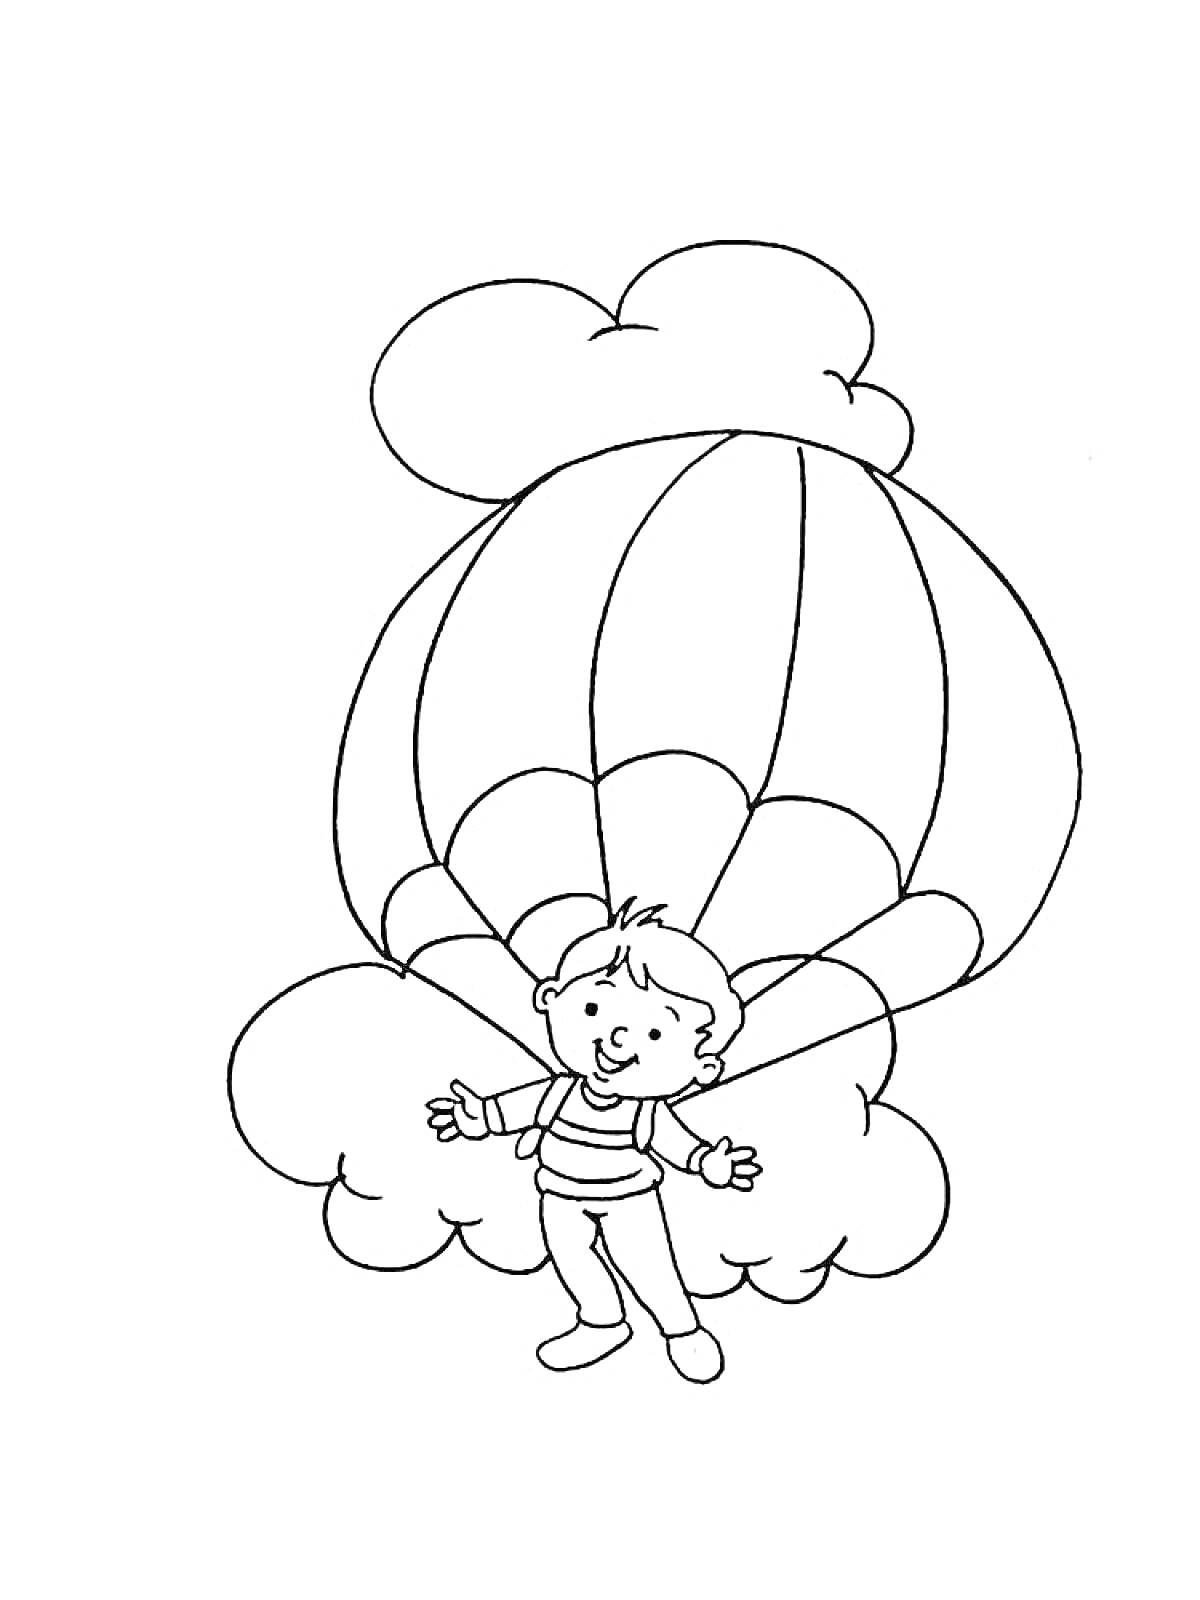 Мальчик с парашютом на фоне облаков